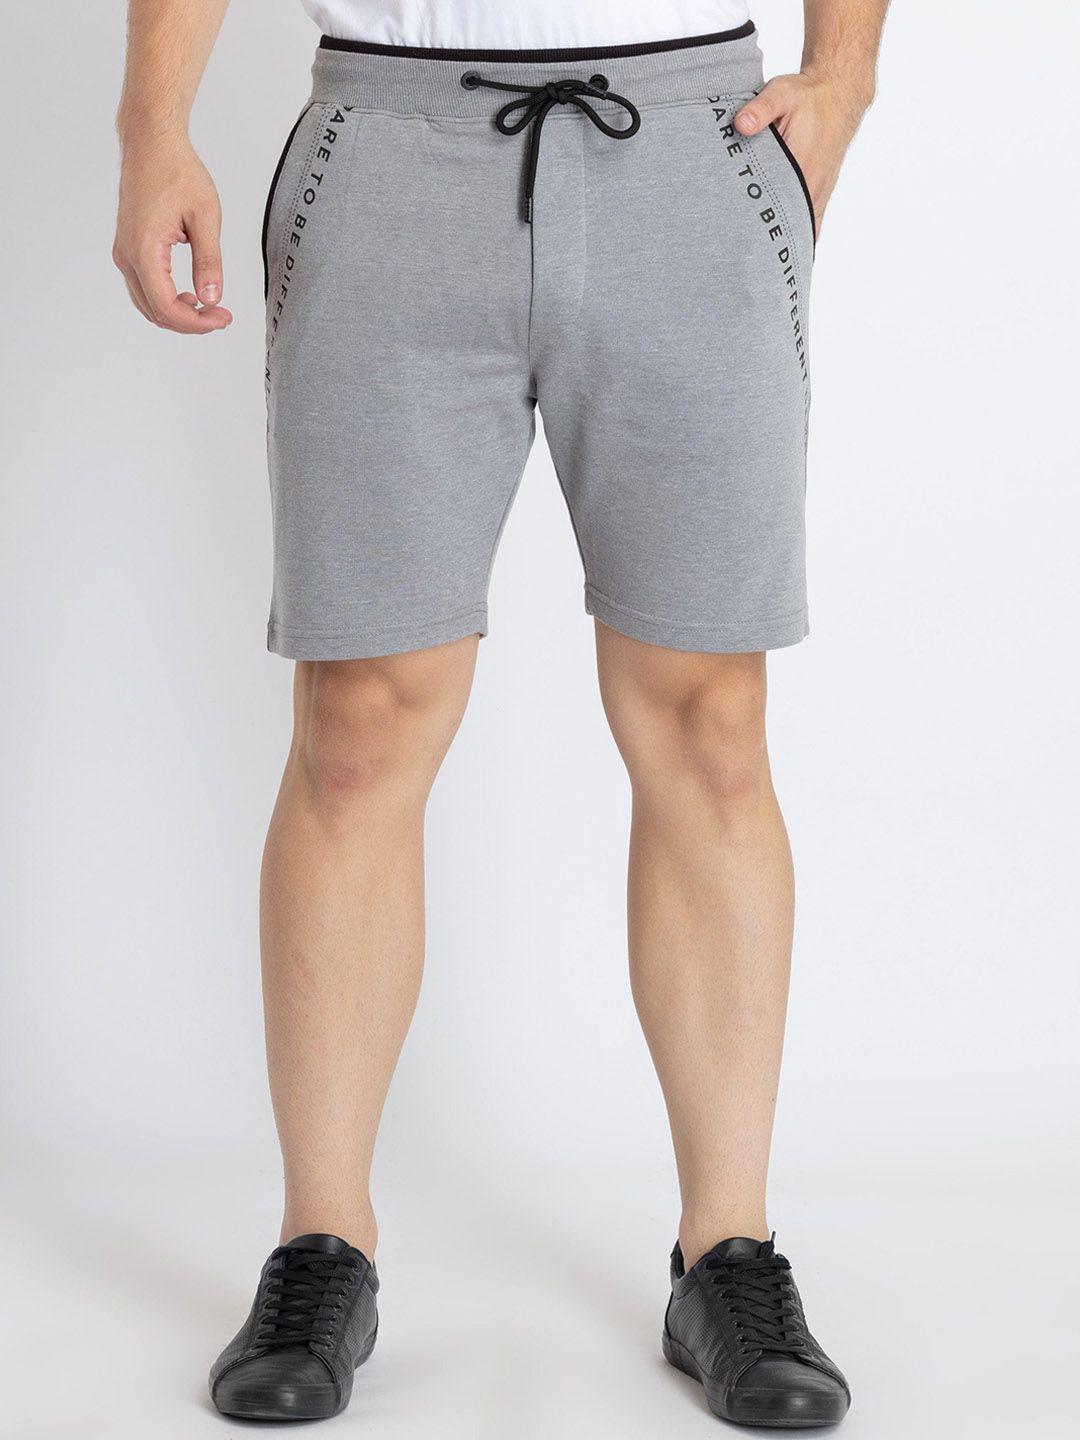 status-quo-men-mid-rise-cotton-shorts